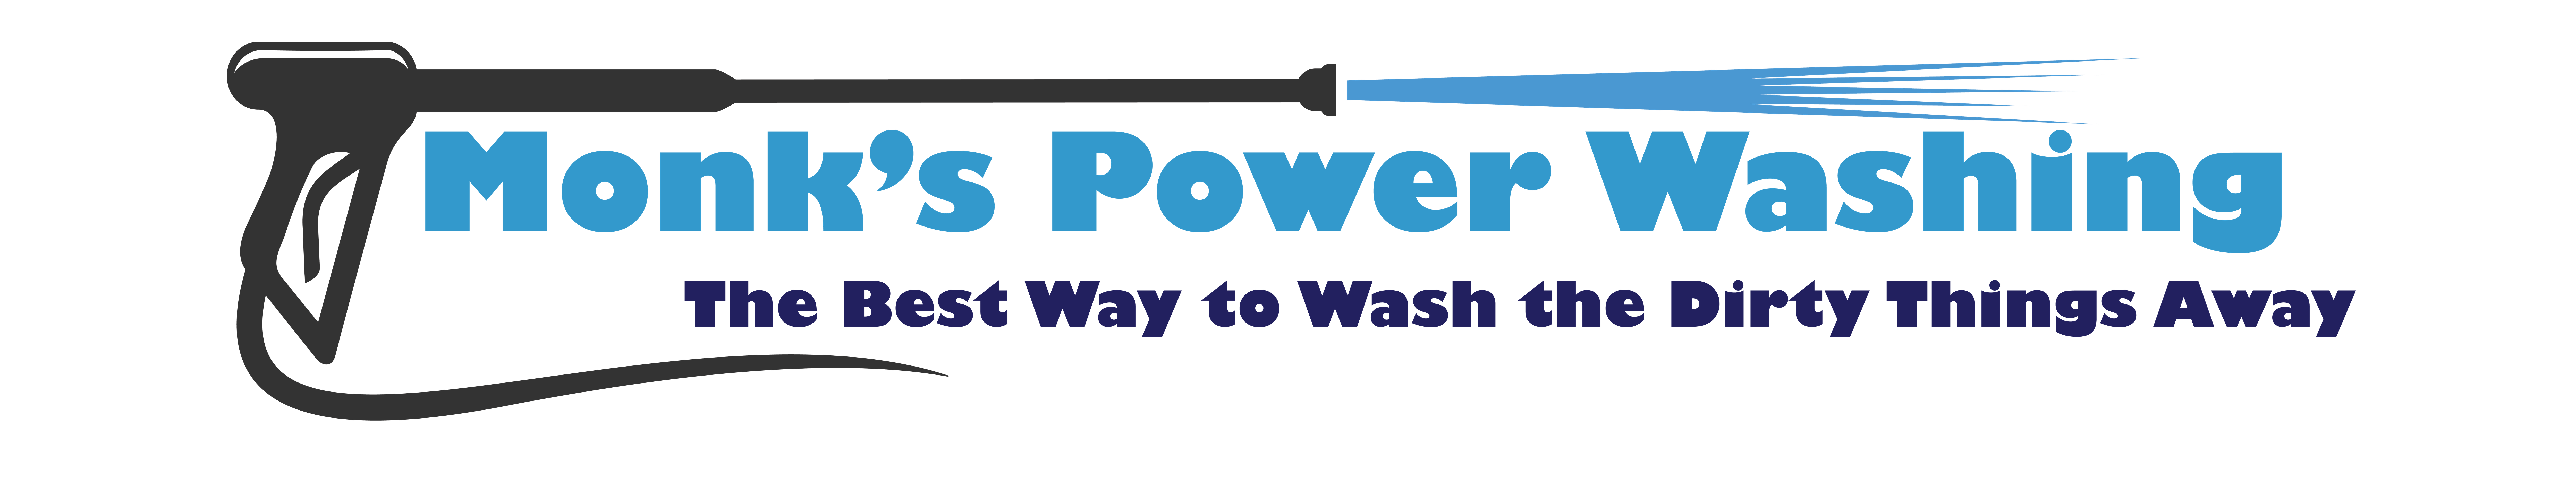 Monks Power Washing Logo